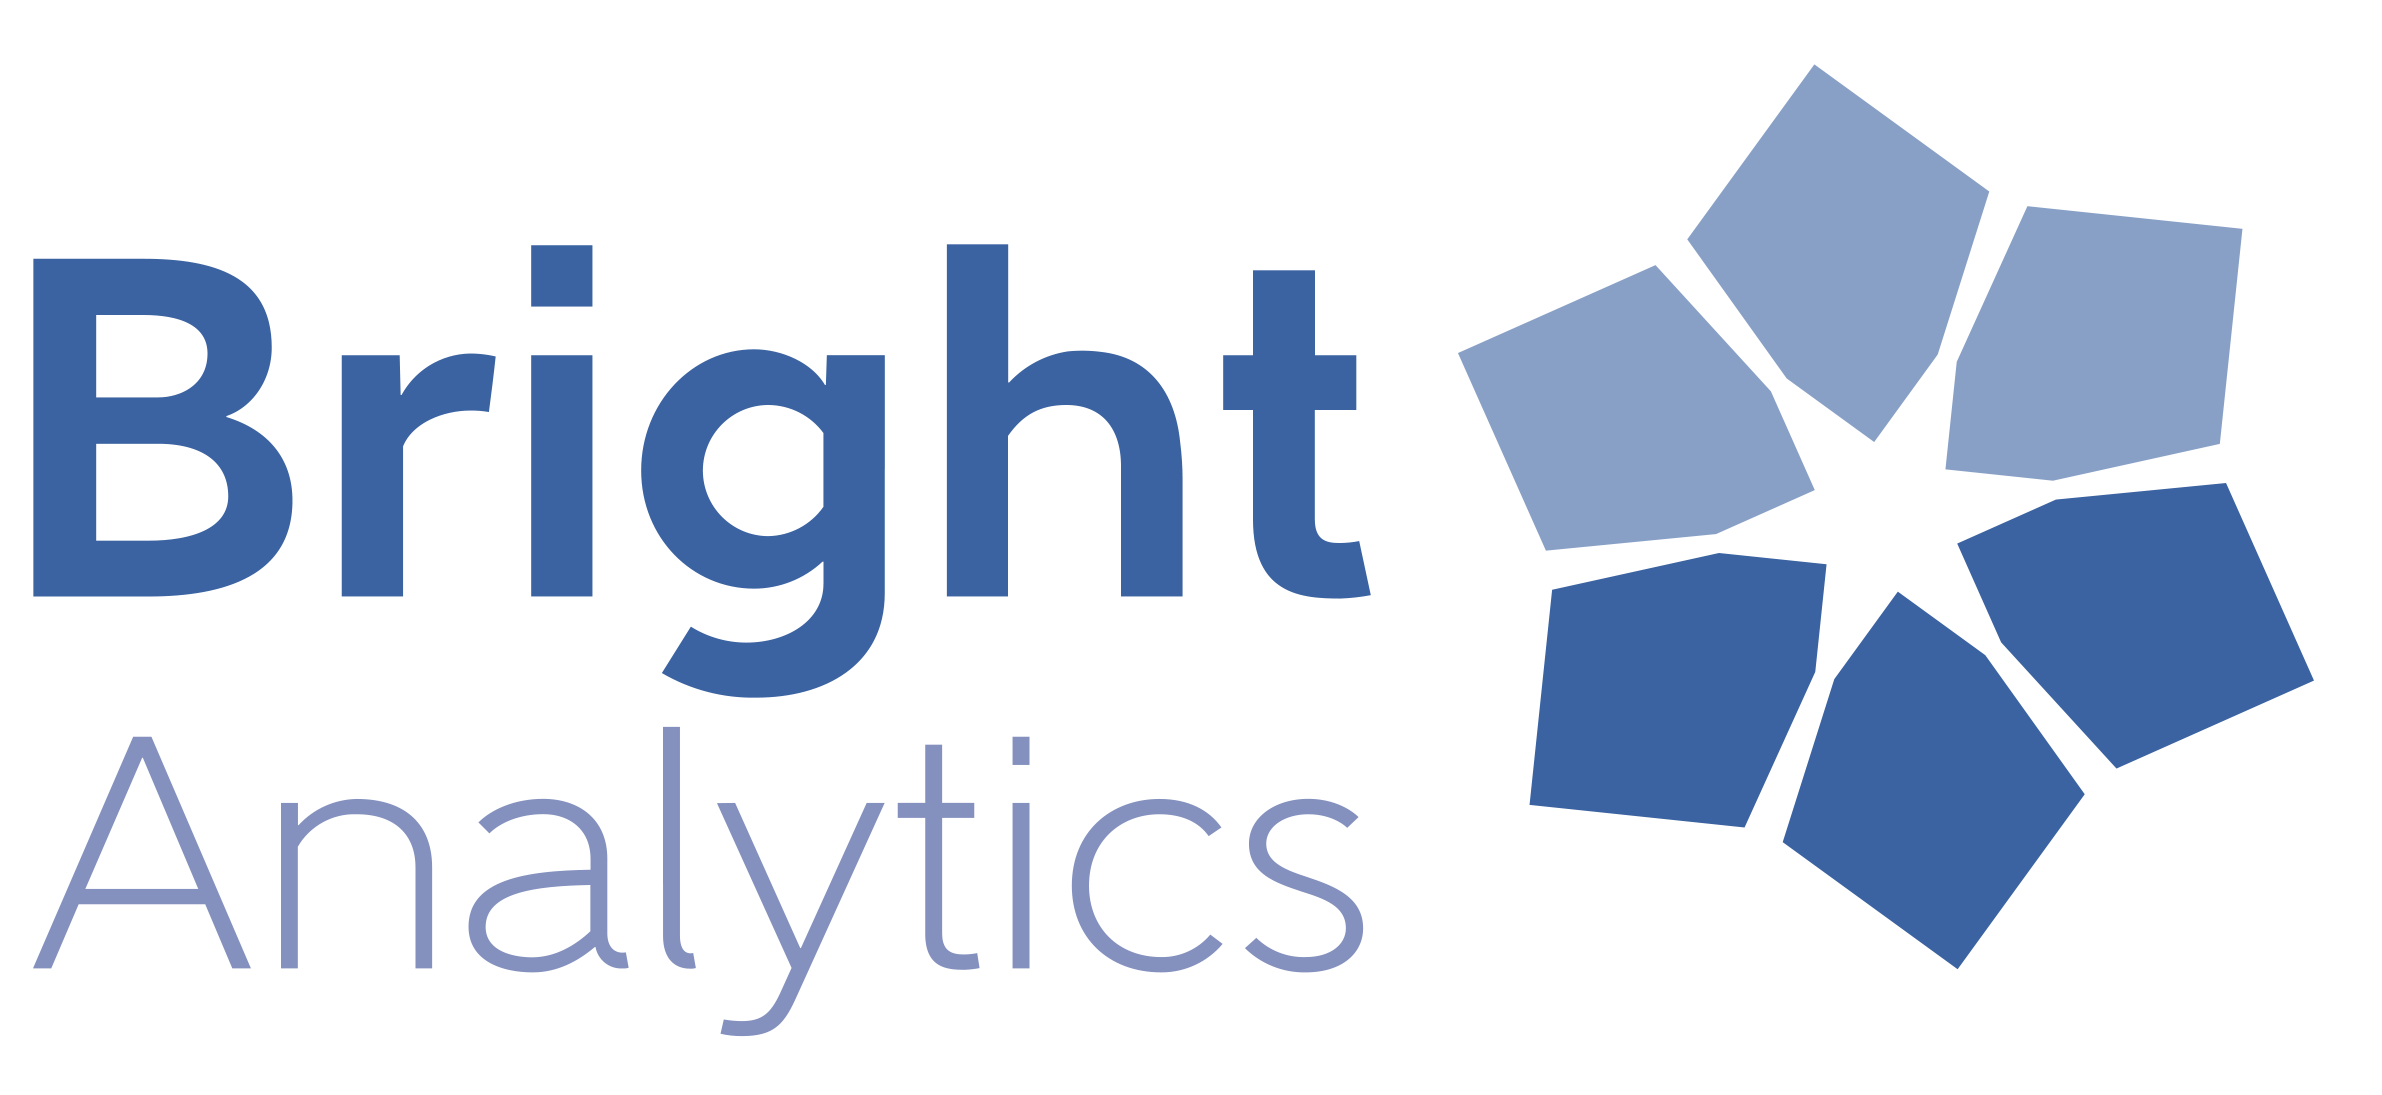 BrightAnalytics_logo